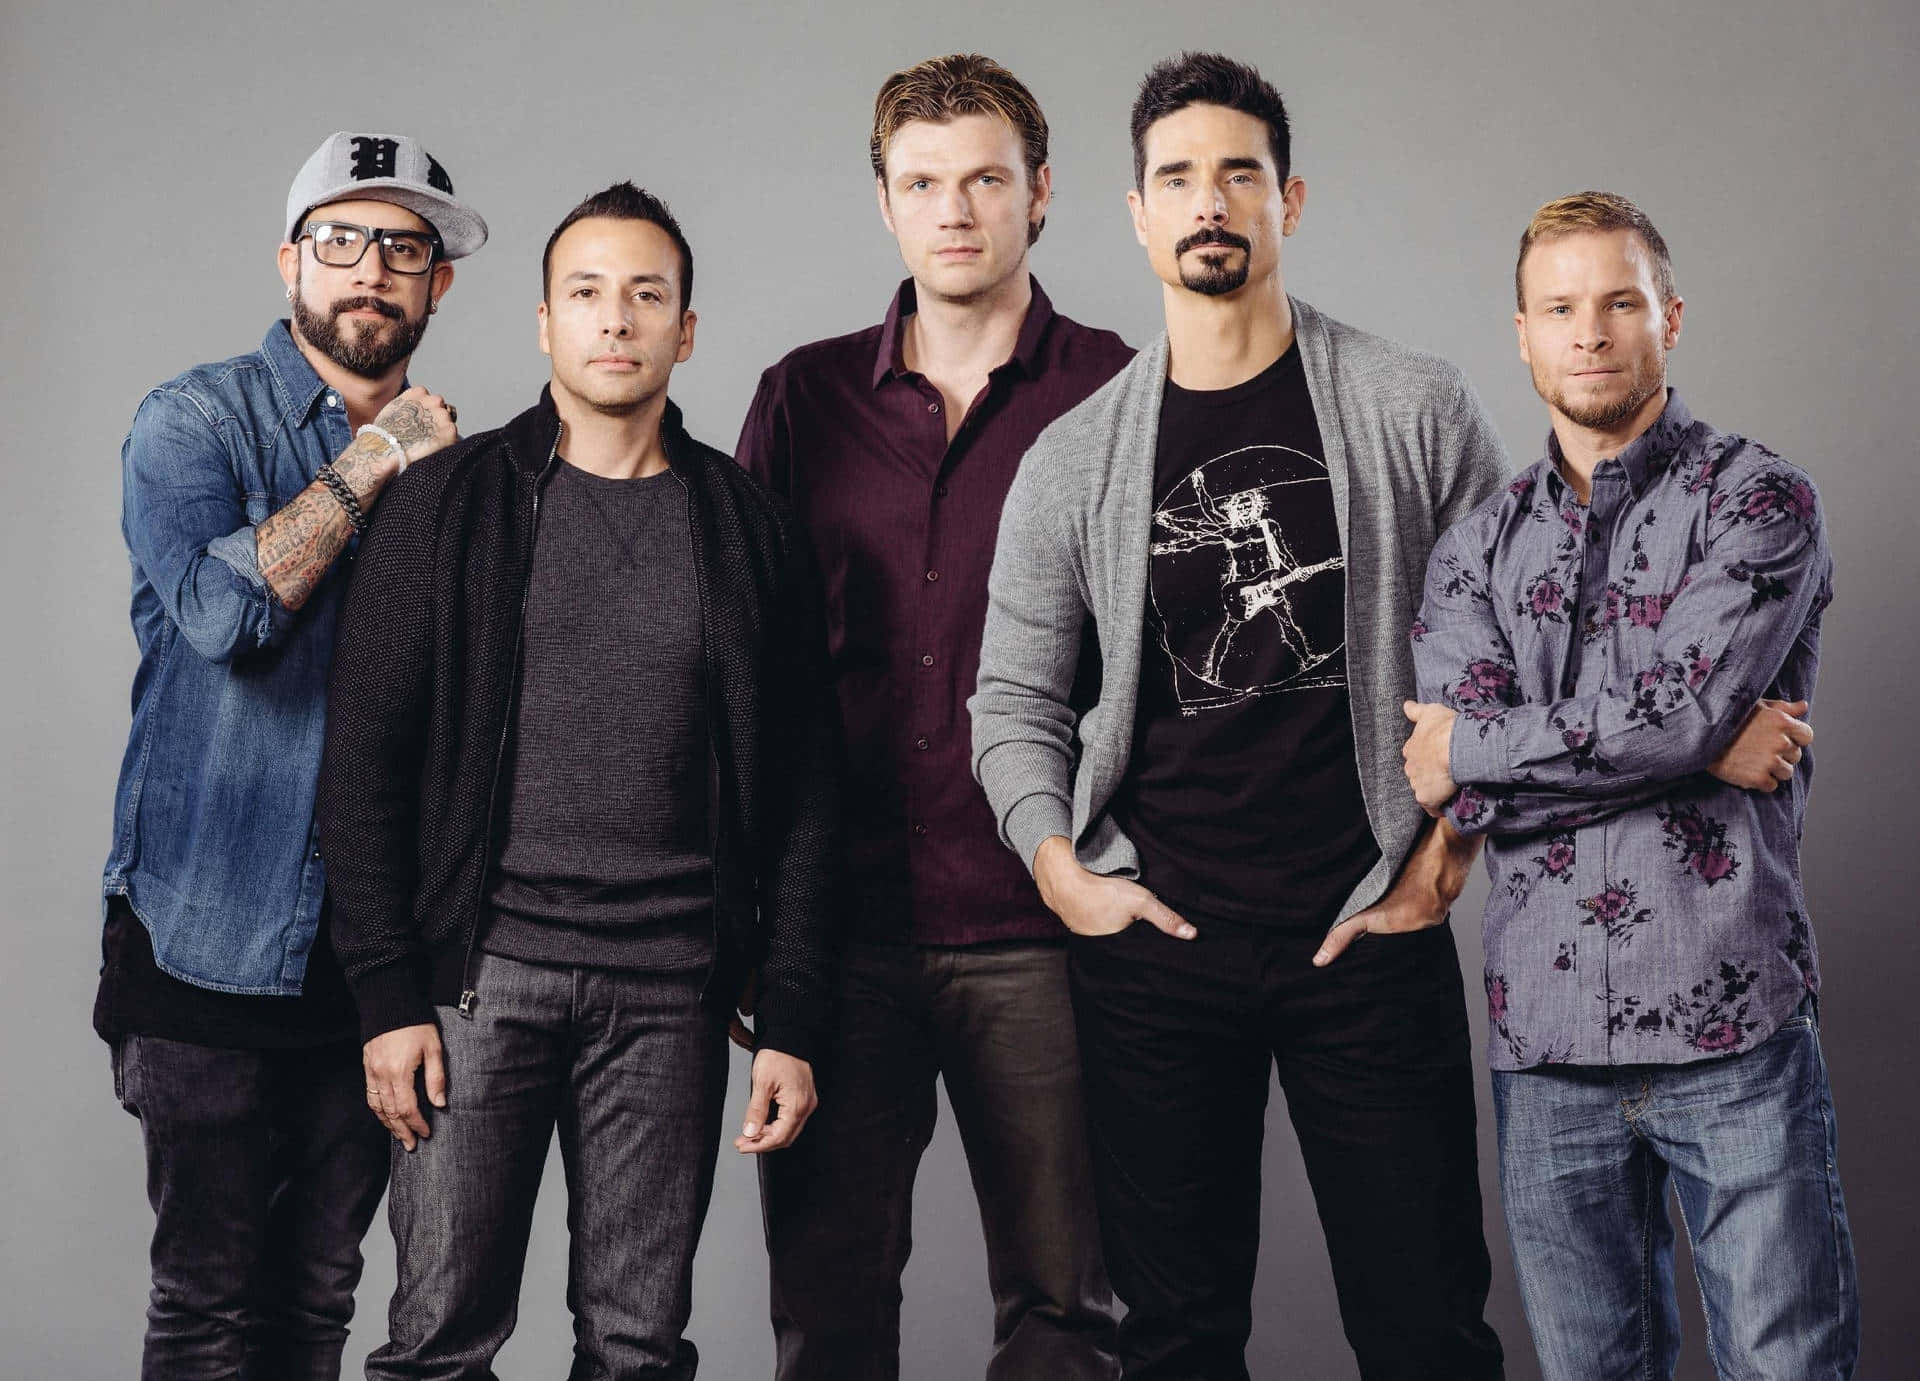 Allafem Ursprungliga Medlemmar Av De Legendariska Backstreet Boys Återförenades På Scenen.